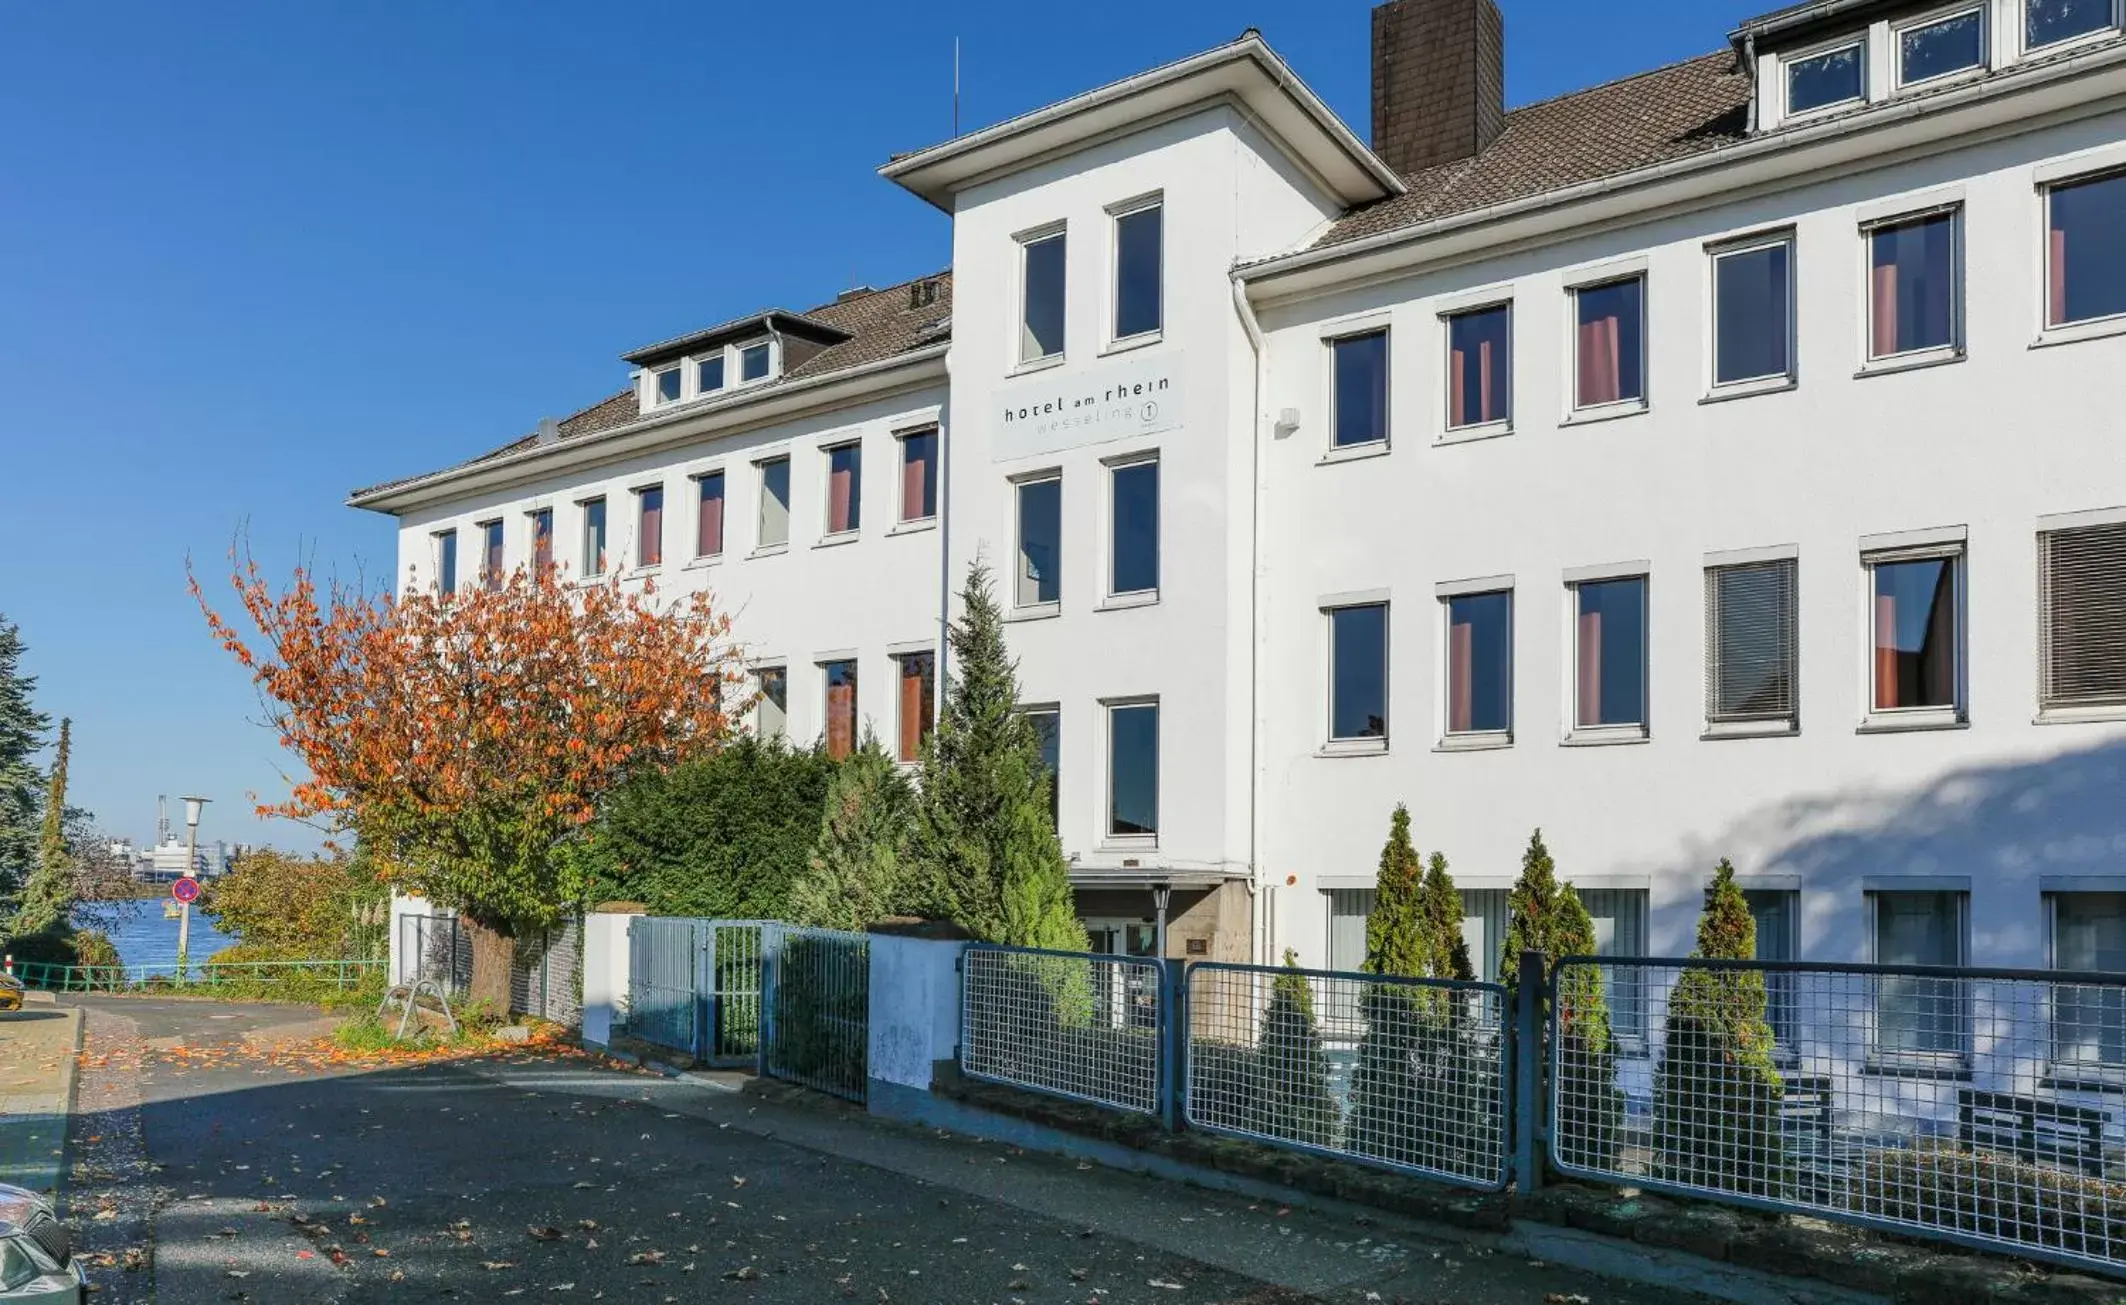 Property Building in Hotel am Rhein